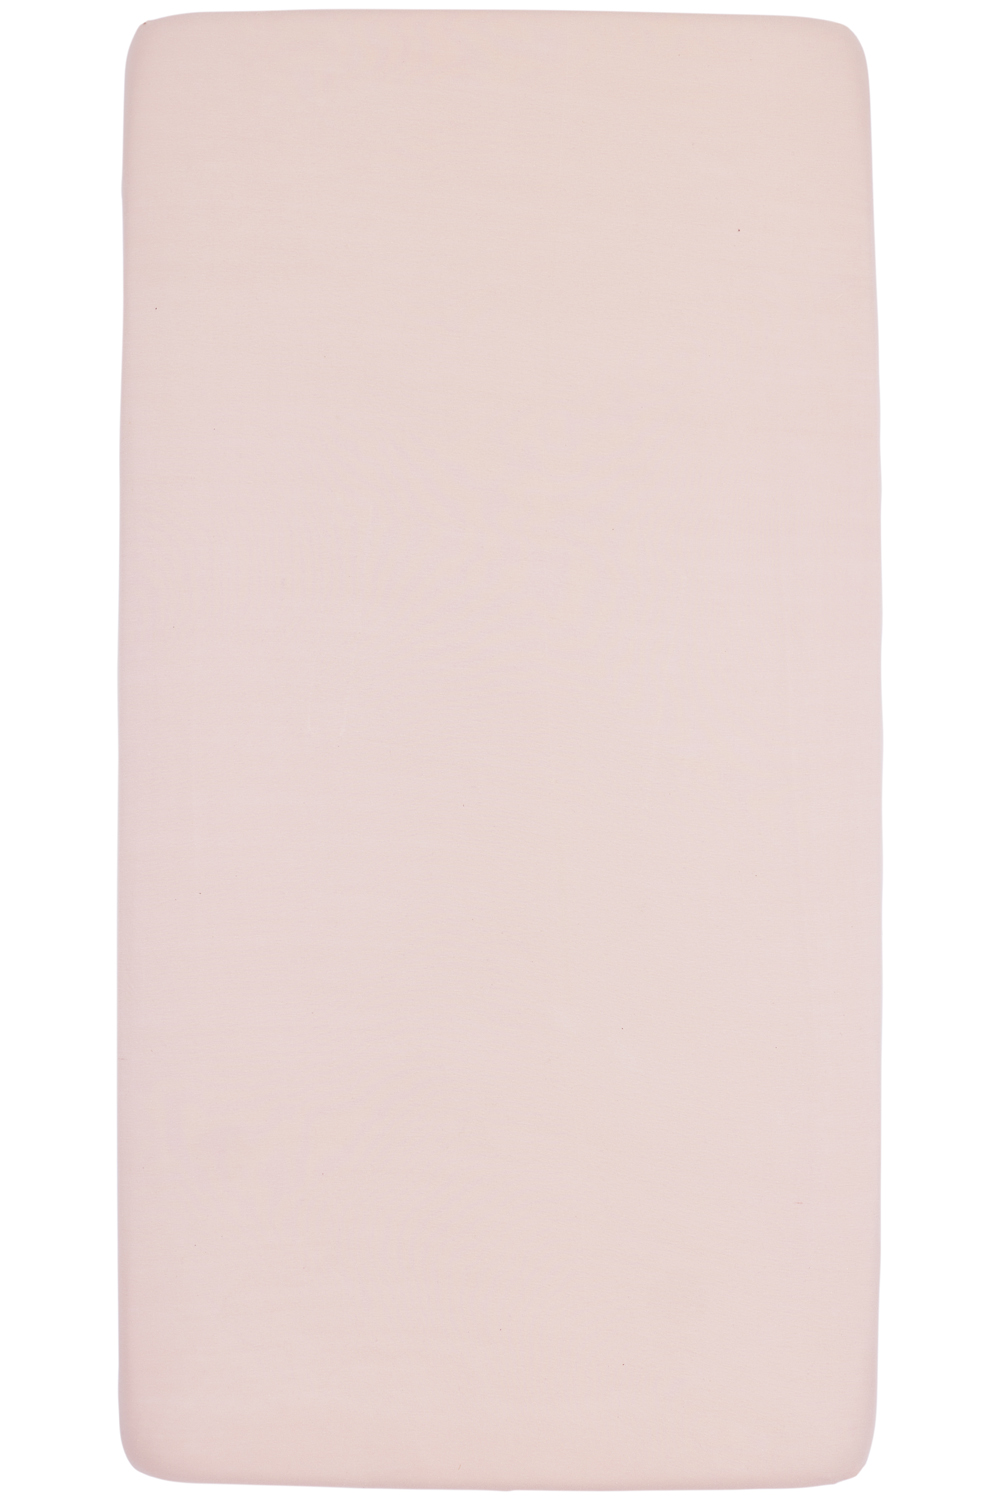 Jersey Hoeslaken Juniorbed - Soft Pink - 70x140/150cm